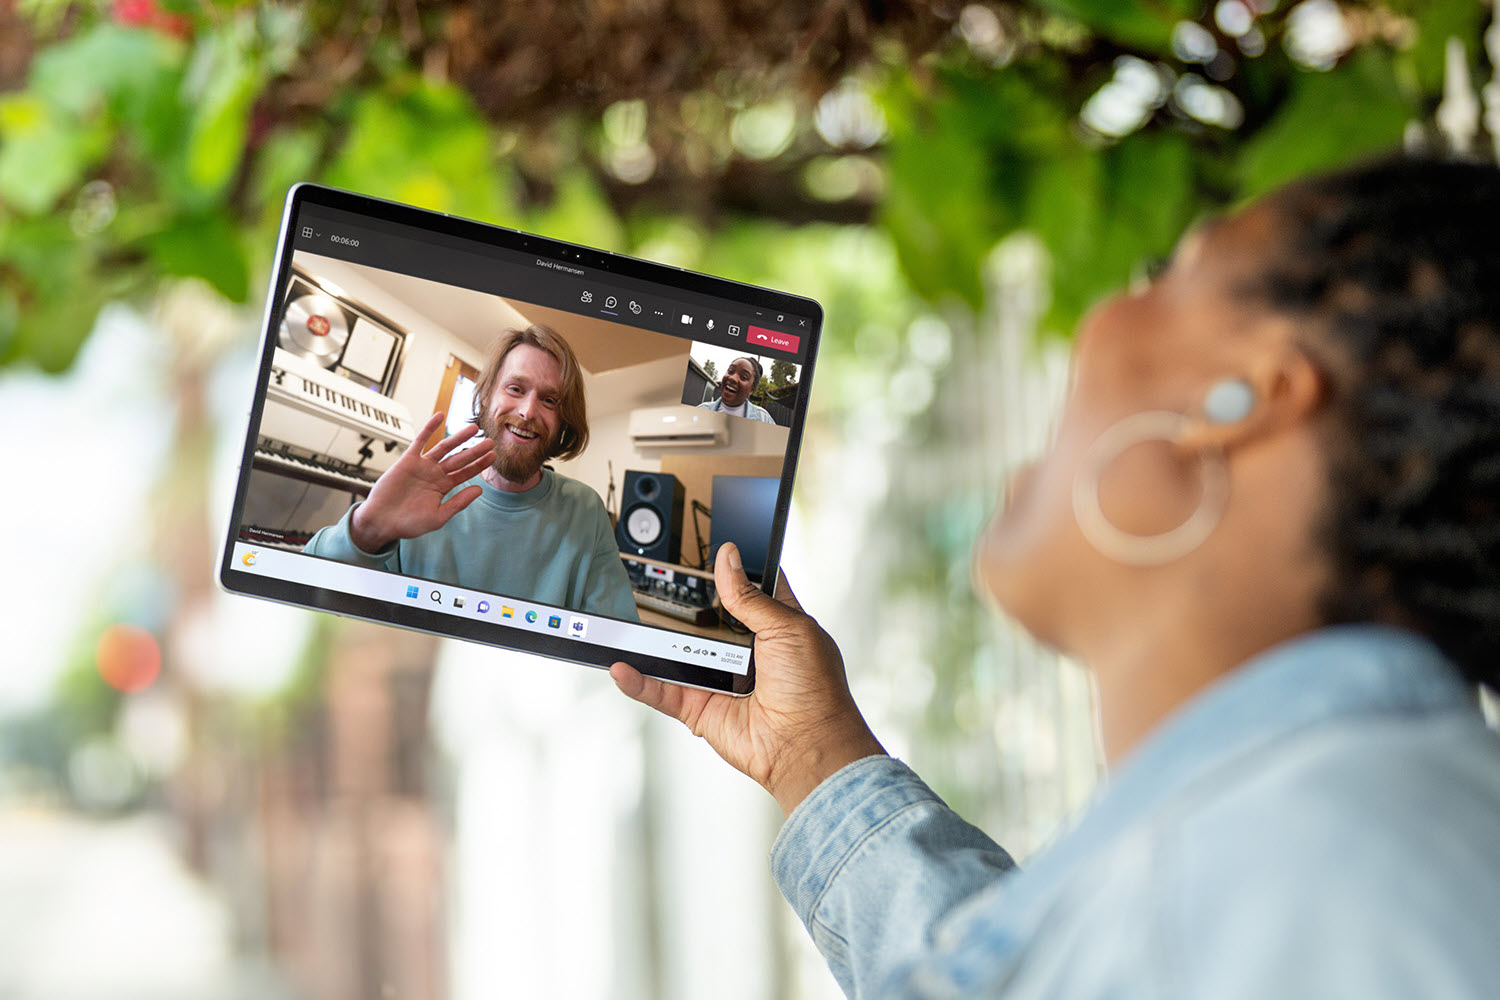 显示平板电脑和视频会议的 Microsoft Surface Pro 9 前视图。